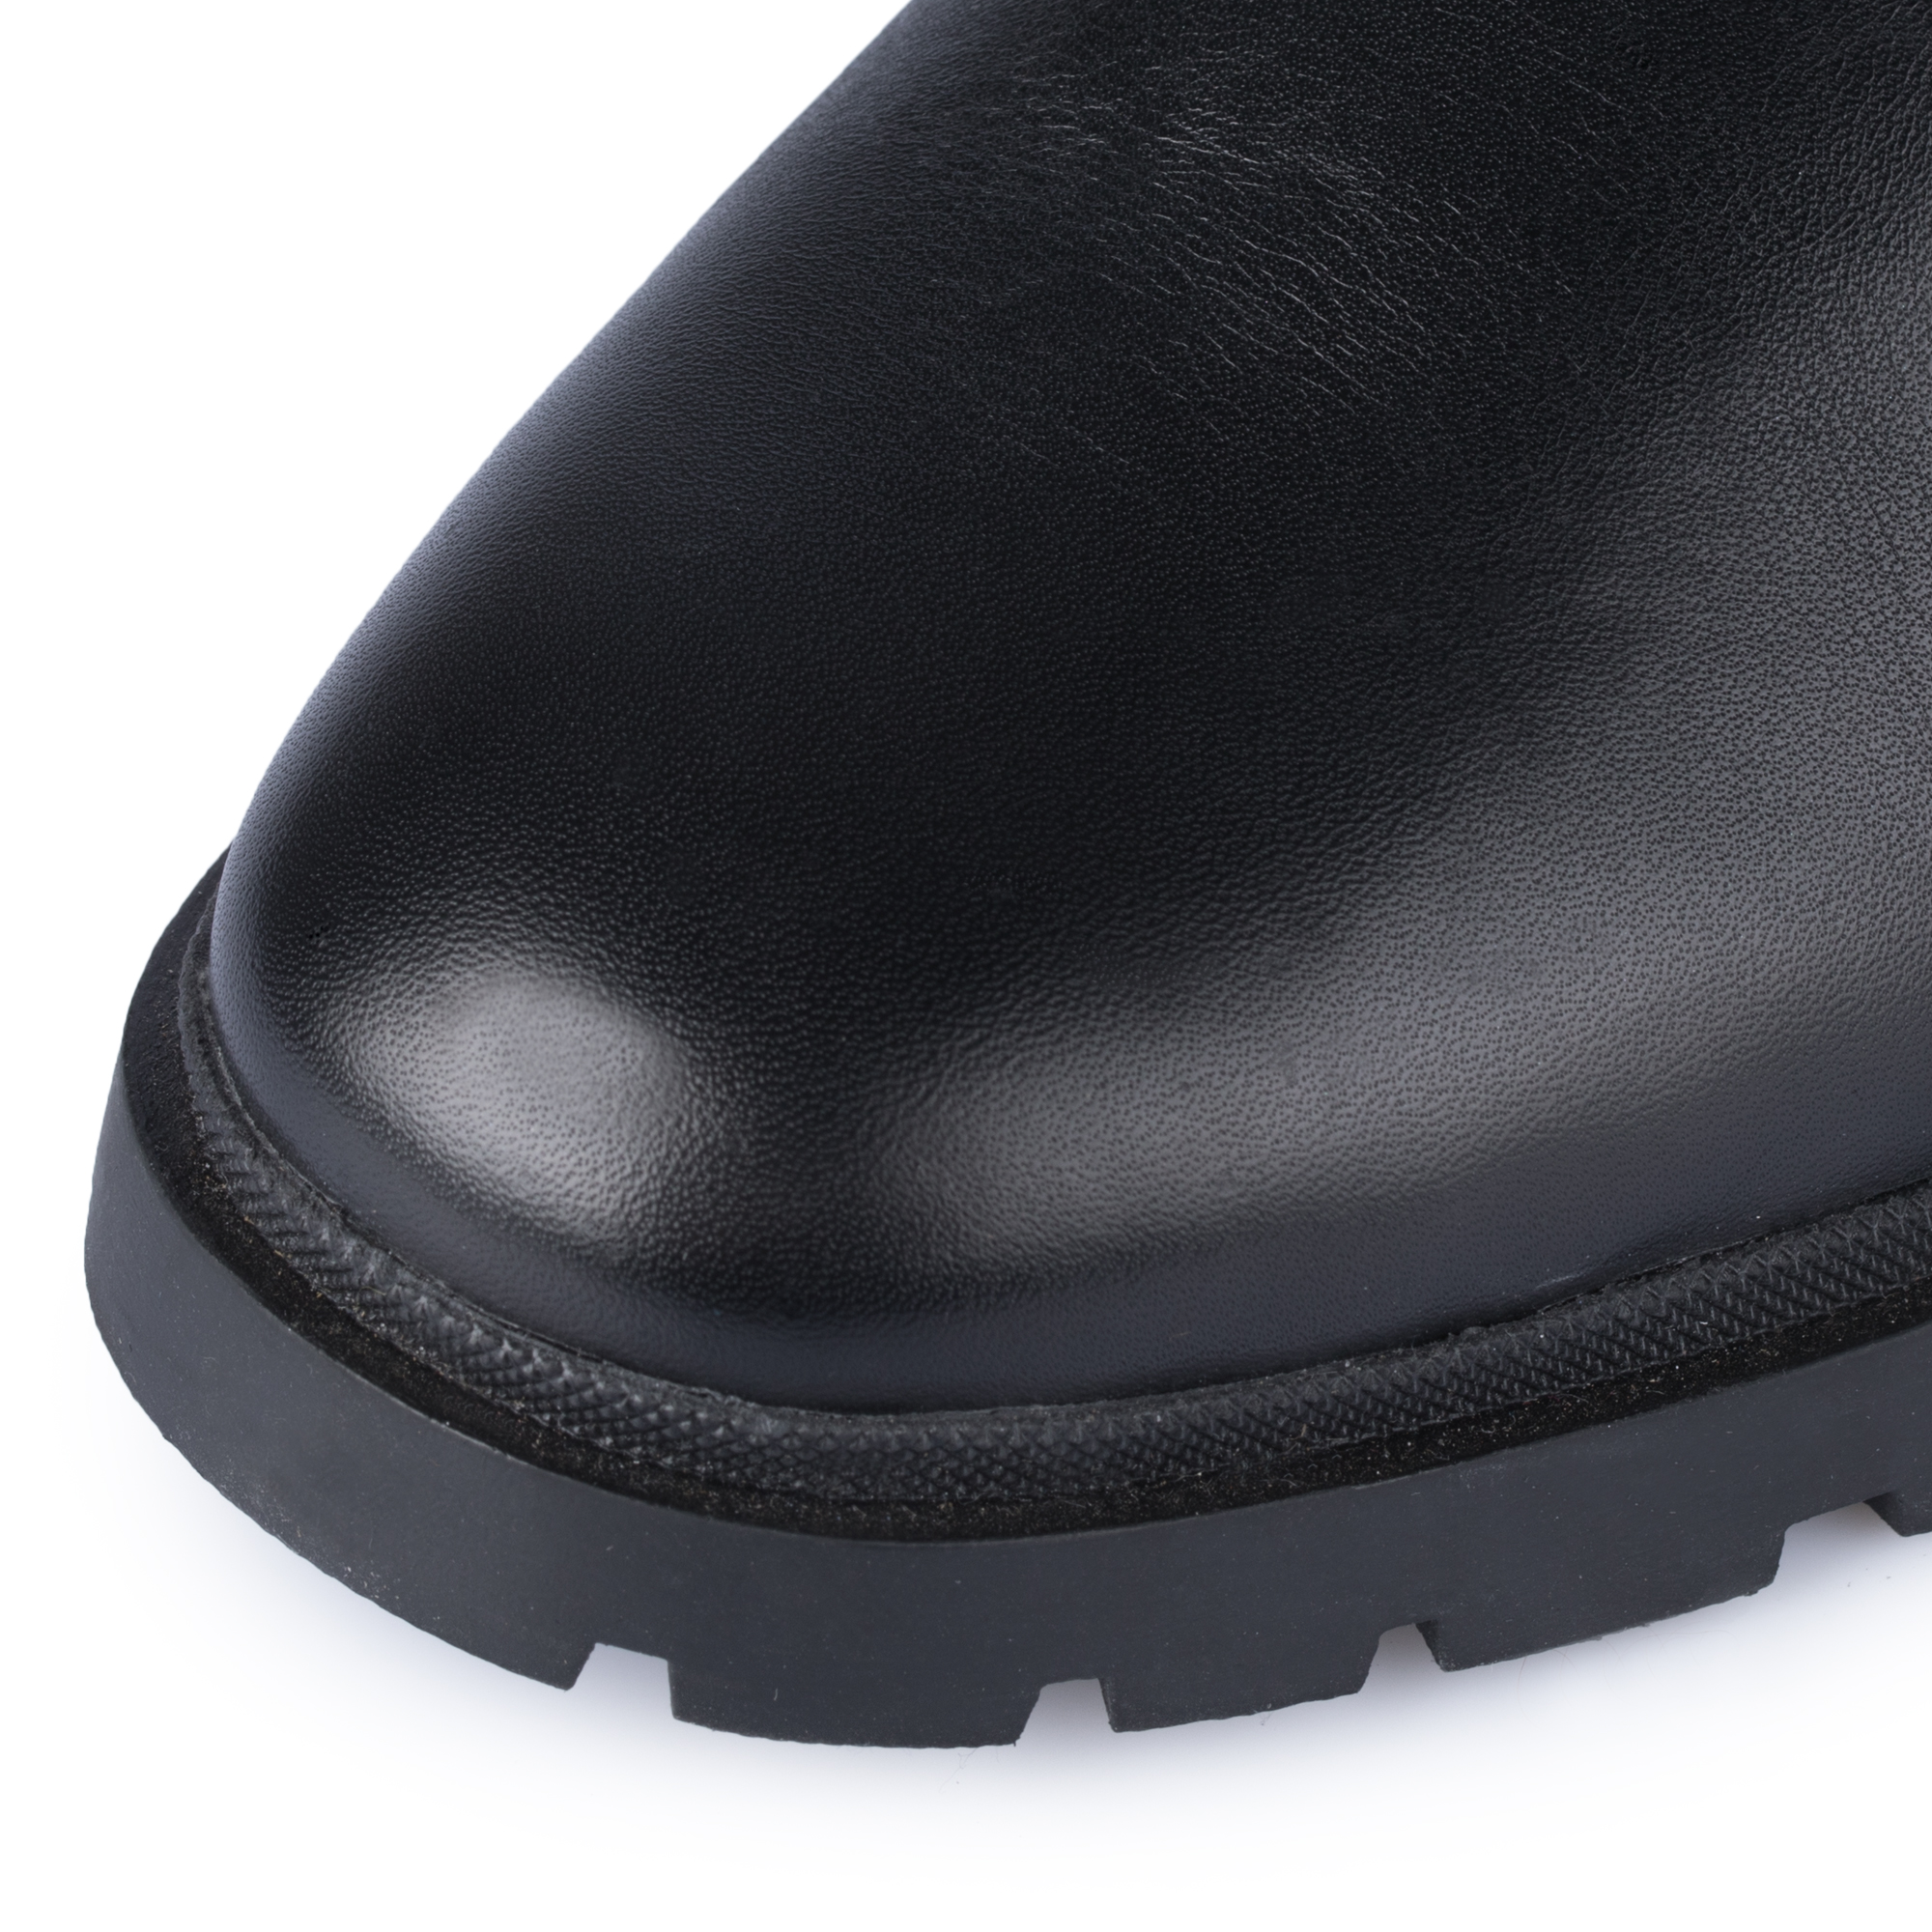 Ботинки Thomas Munz 569-193A-2102, цвет черный, размер 39 - фото 6